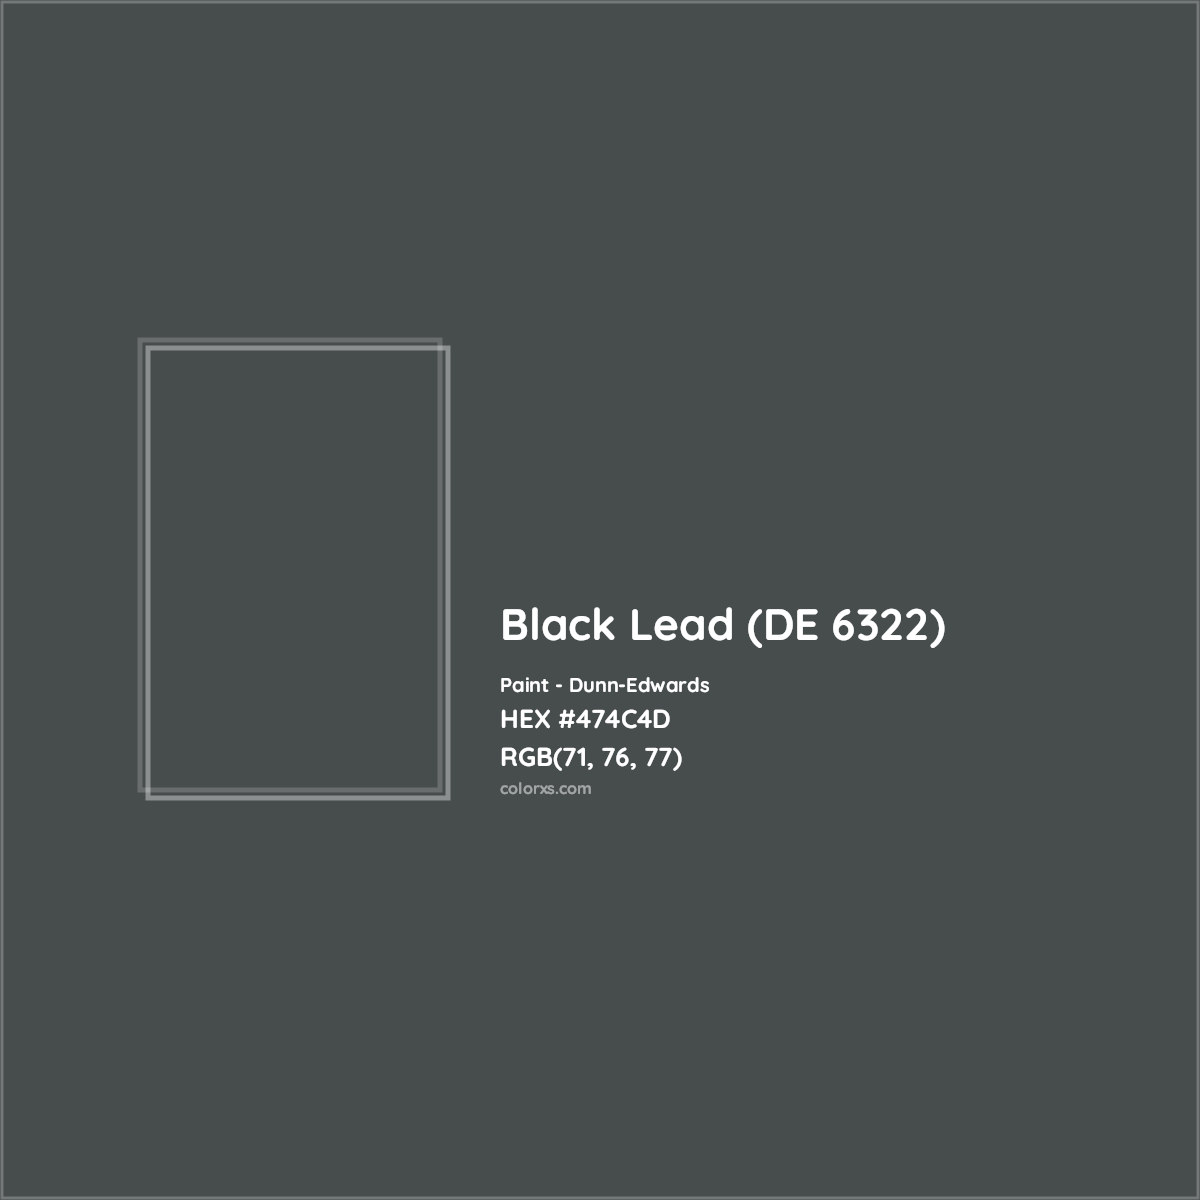 HEX #474C4D Black Lead (DE 6322) Paint Dunn-Edwards - Color Code